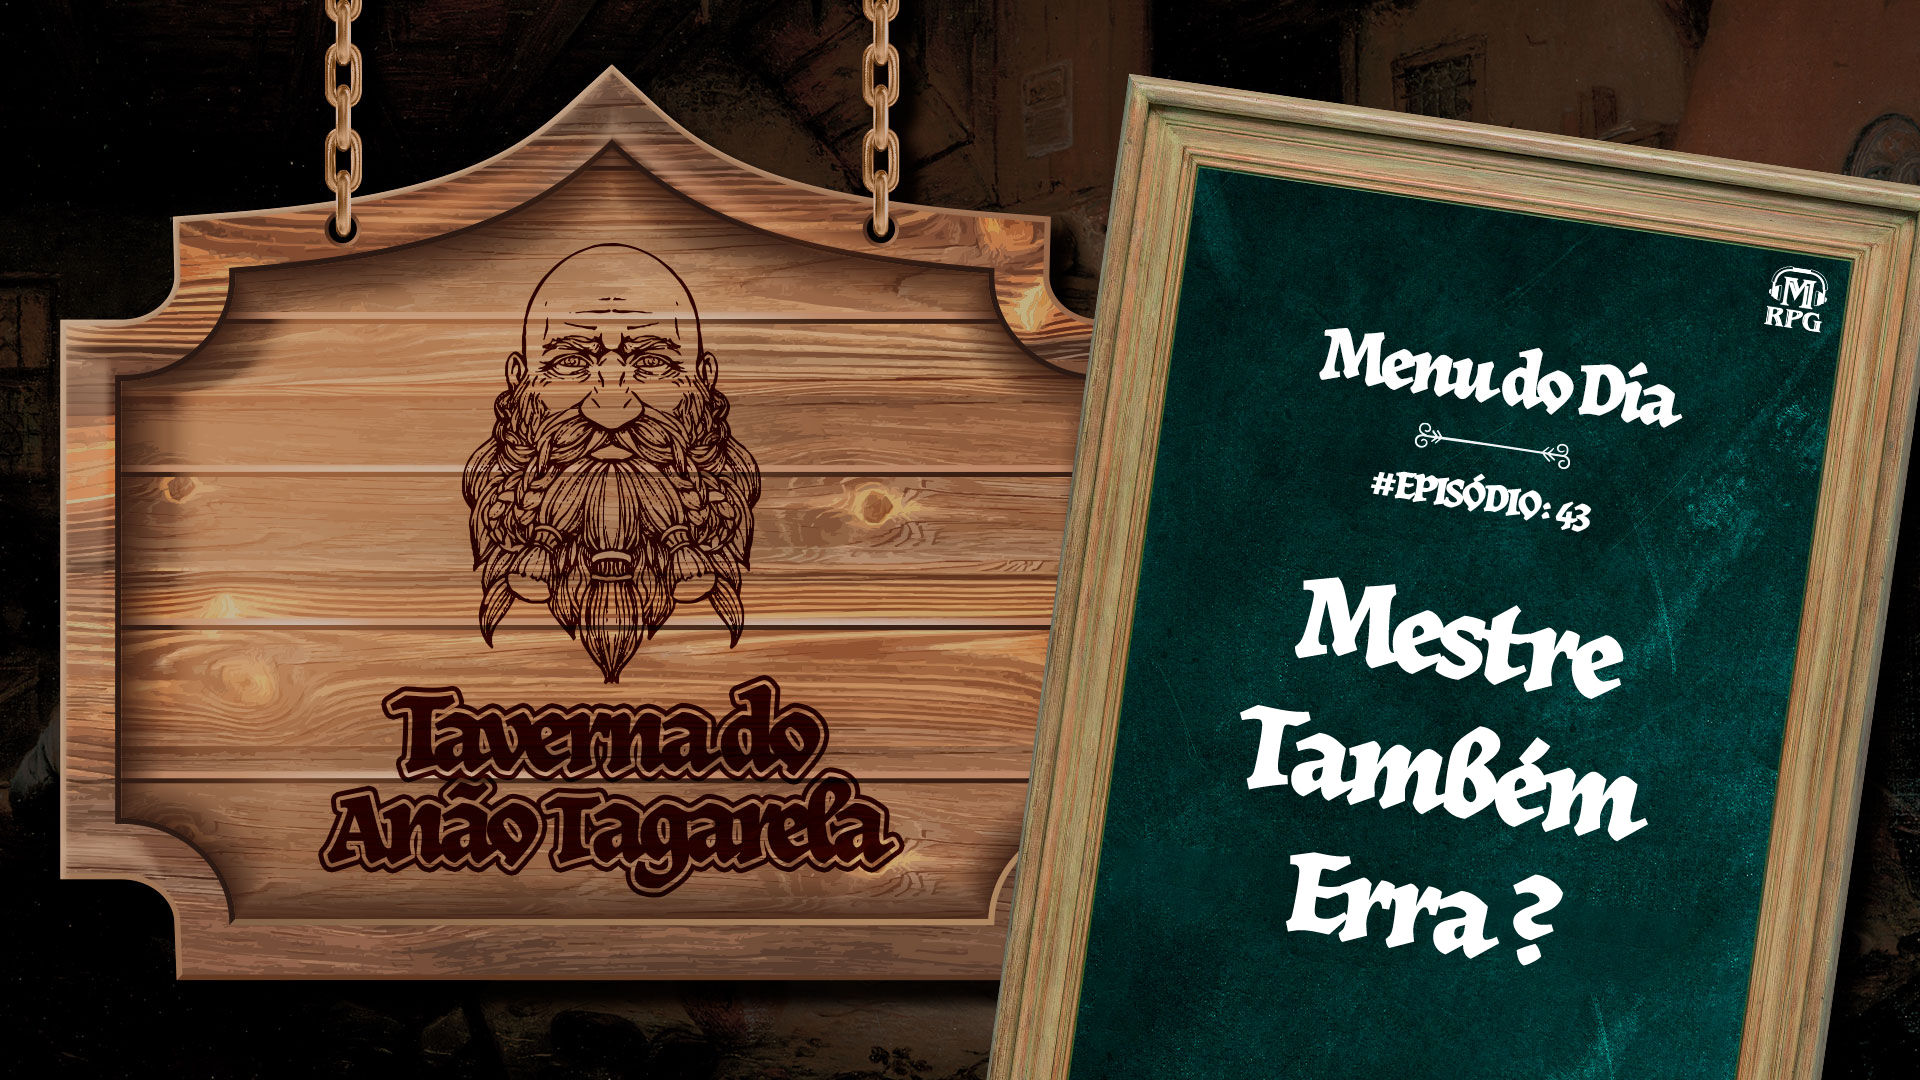 Mestre Também Erra – Taverna do Anão Tagarela #43